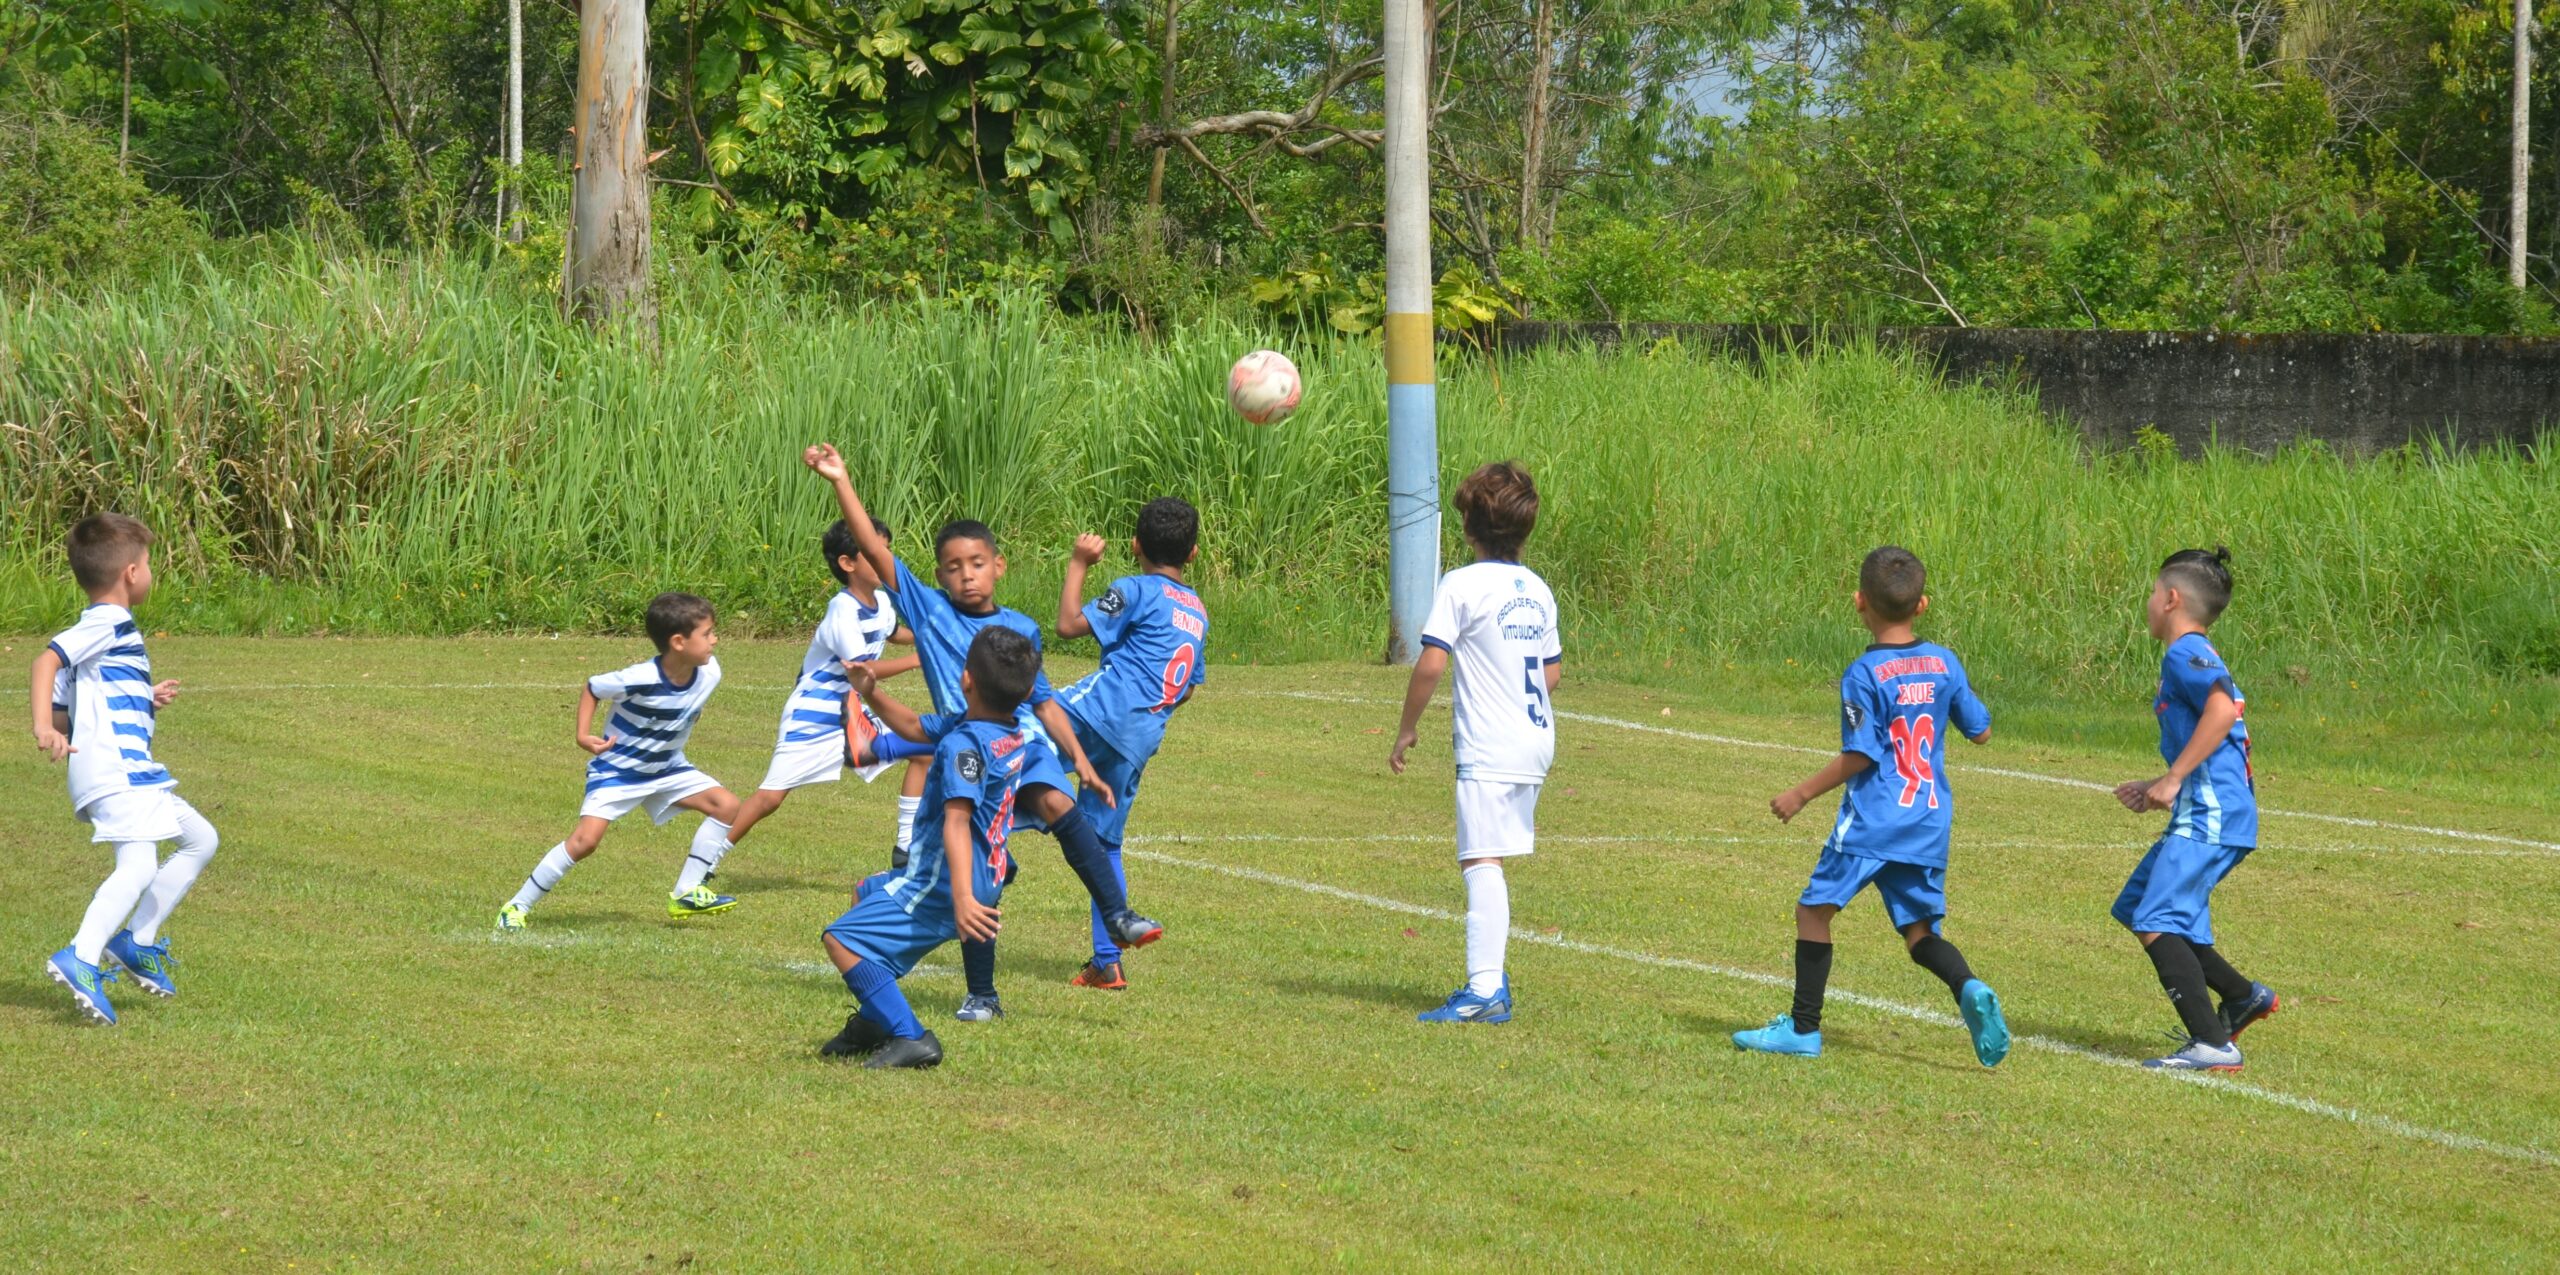 Meninos crianças jogando futebol, esporte, jogo, conjunto de